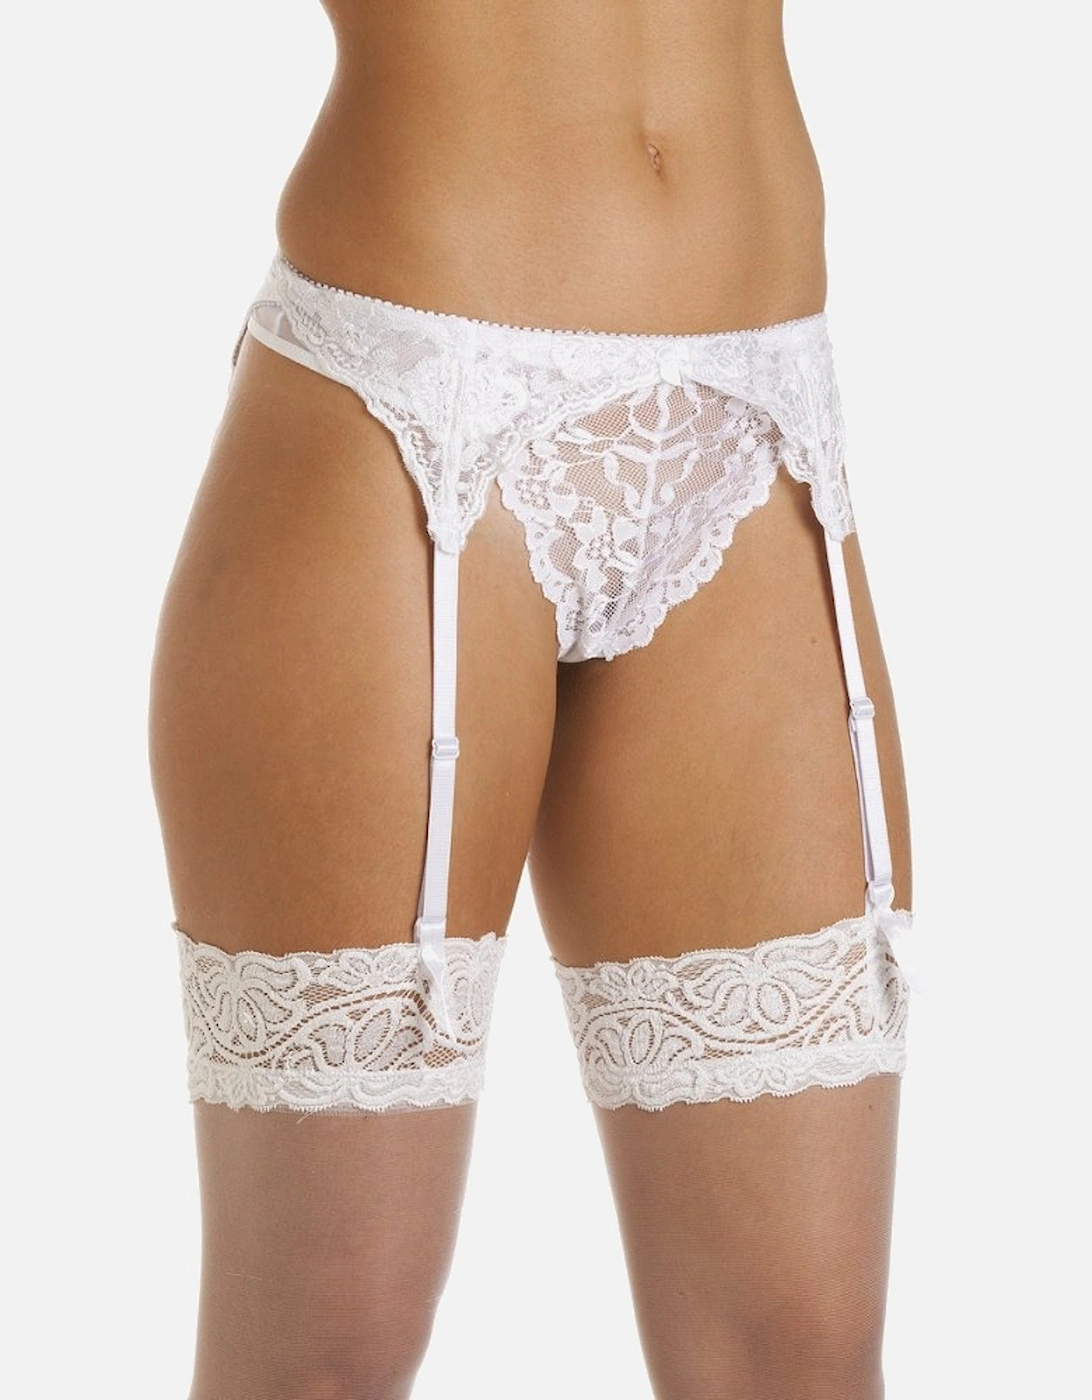 Camille Women's Suspender Belt in White Narrow Lace Ladies Sexy Underwear